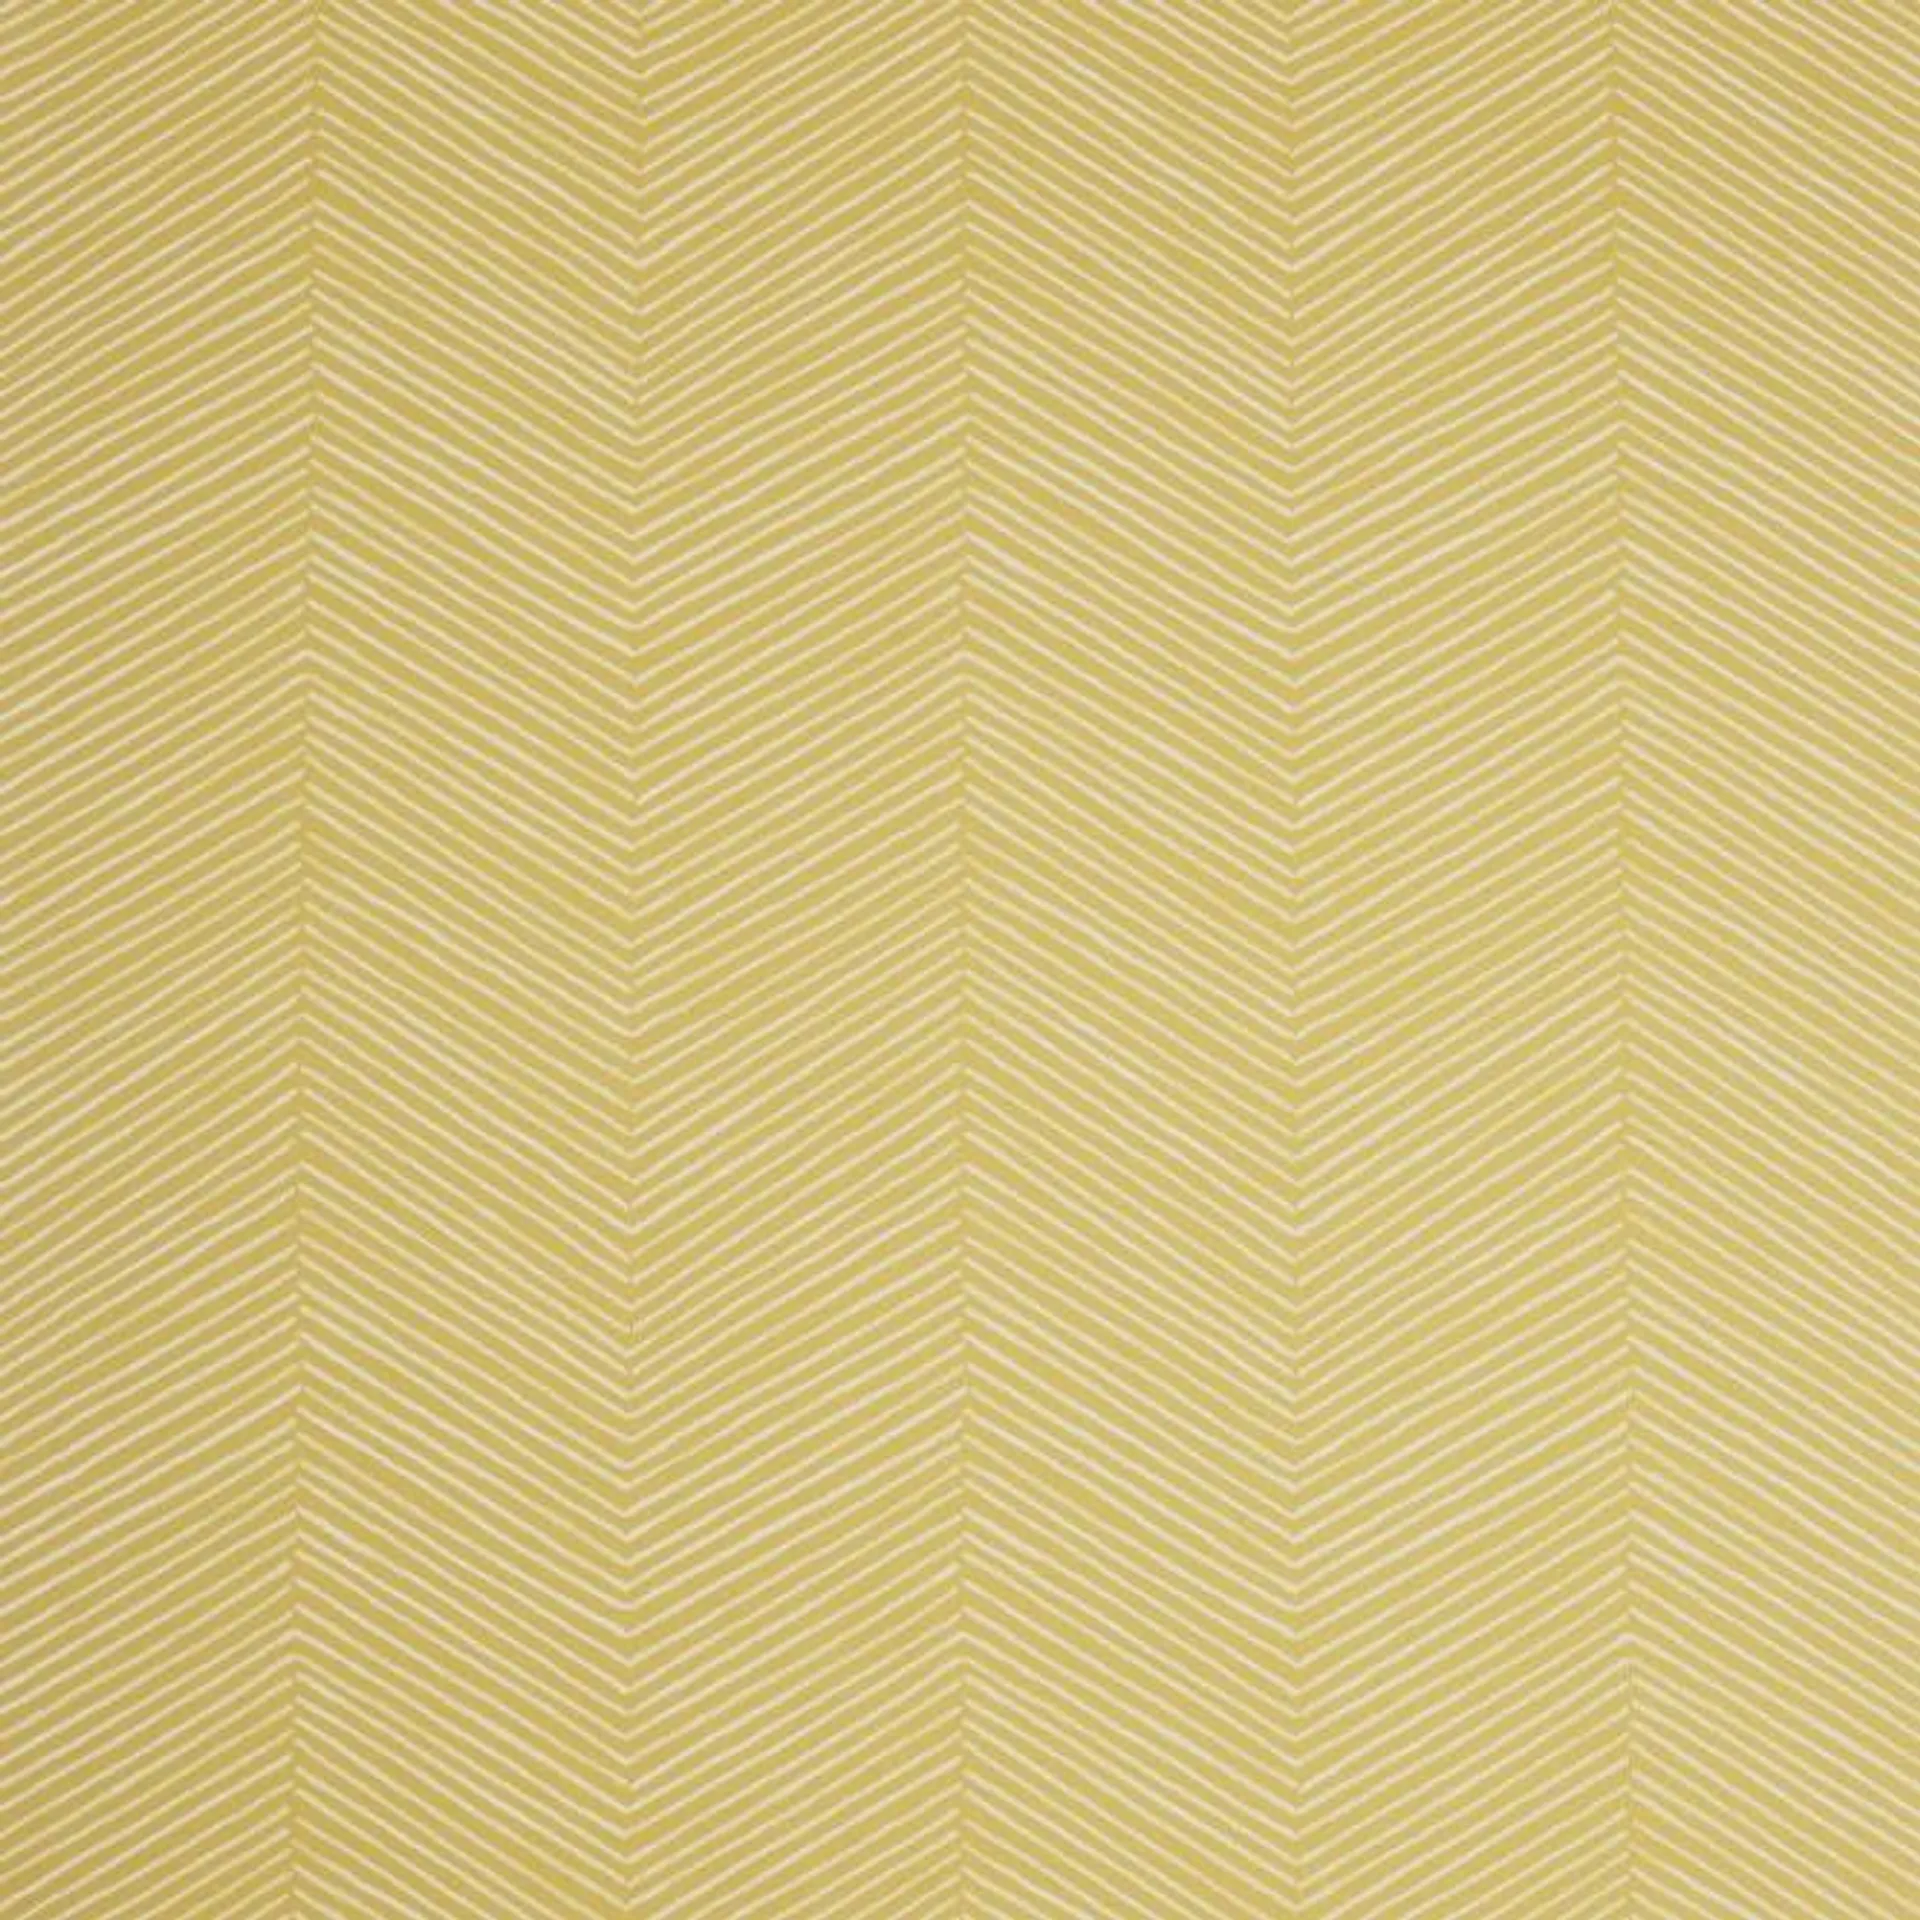 Arrow Weave wallpaper in Ochre